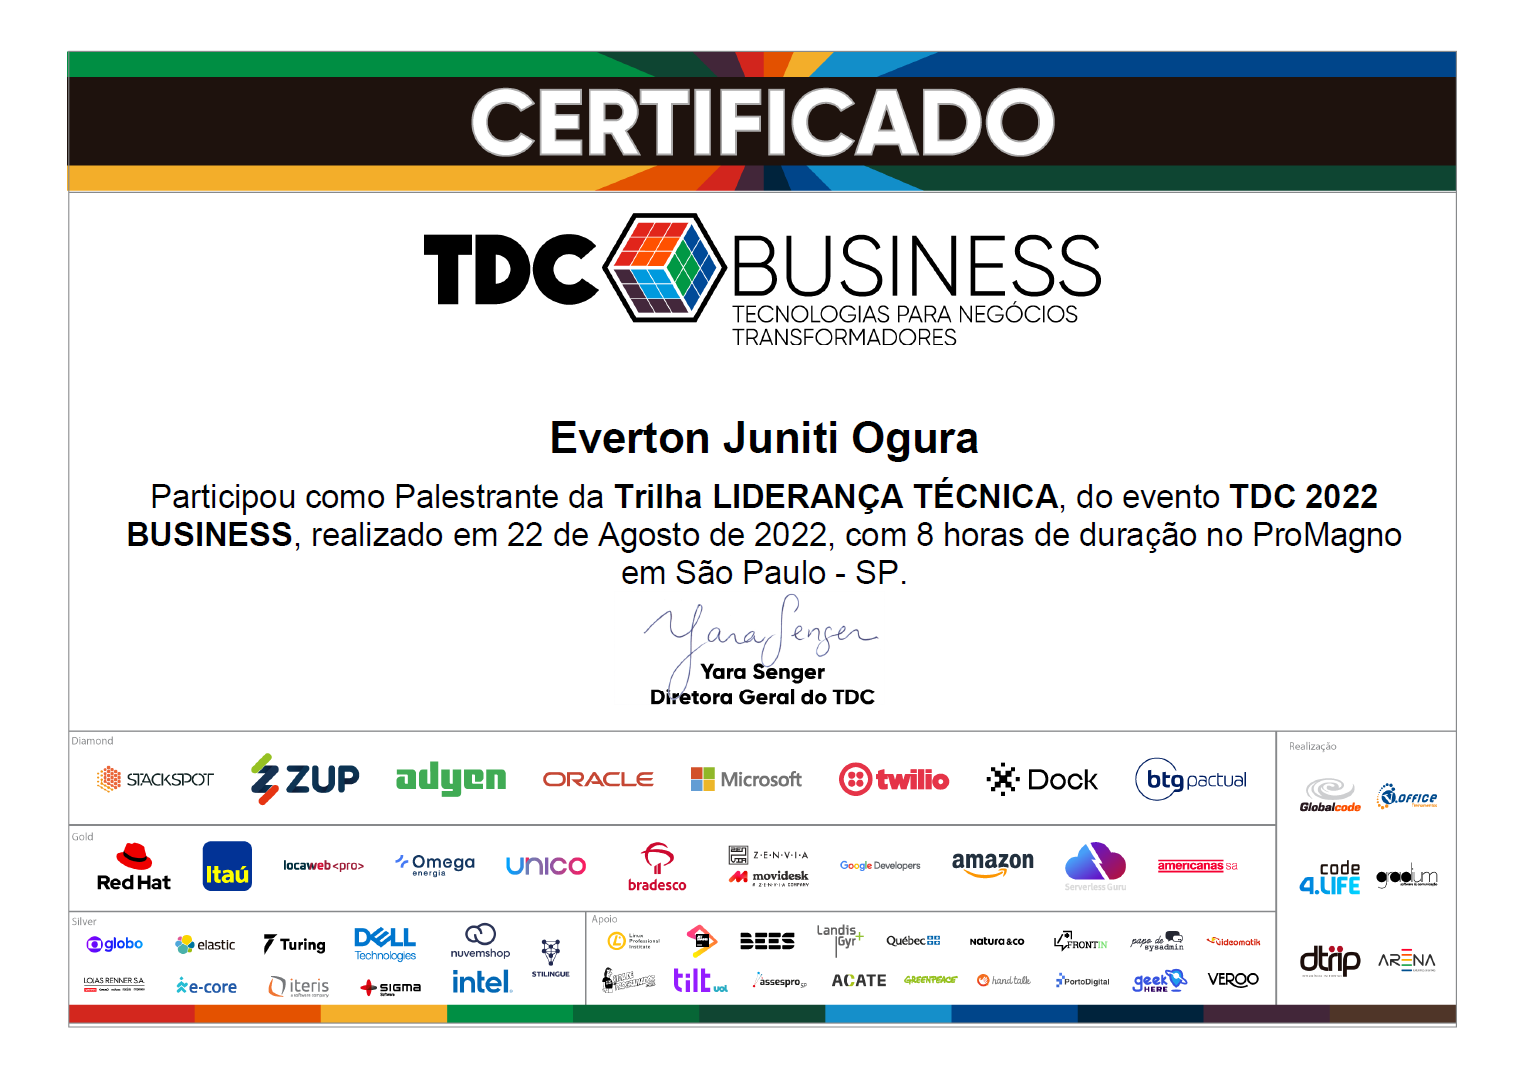 Foto do certificado de participação como palestrante na TDC Business 2022